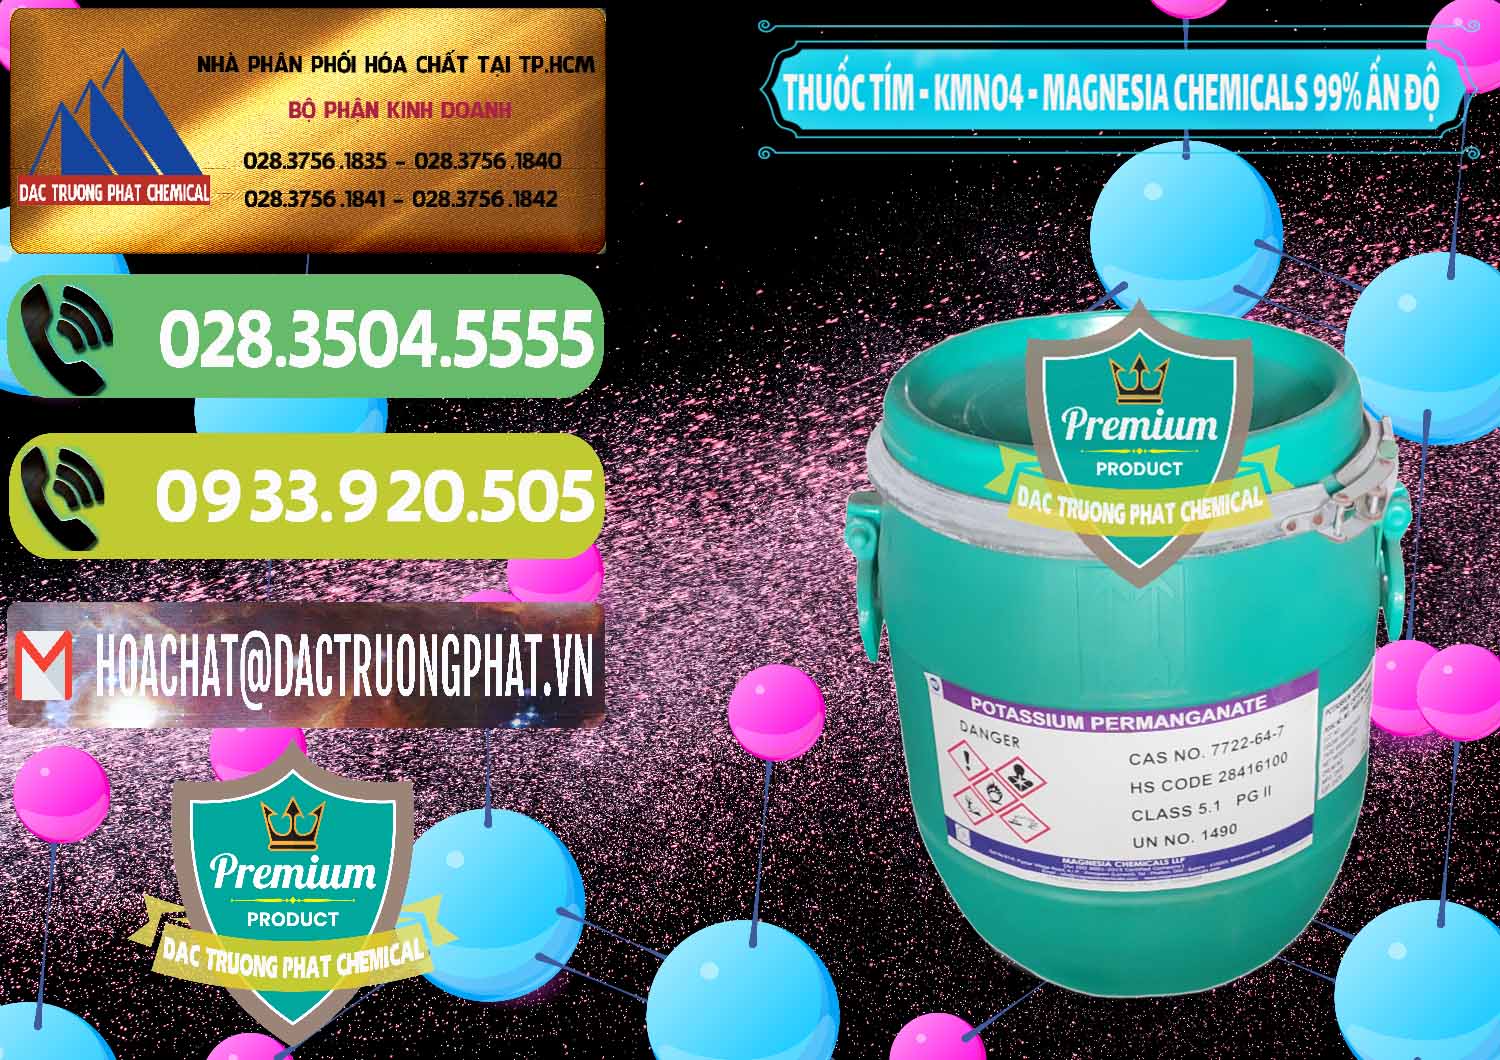 Cty chuyên bán _ cung cấp Thuốc Tím - KMNO4 Magnesia Chemicals 99% Ấn Độ India - 0251 - Nơi cung cấp _ phân phối hóa chất tại TP.HCM - hoachatmientay.vn